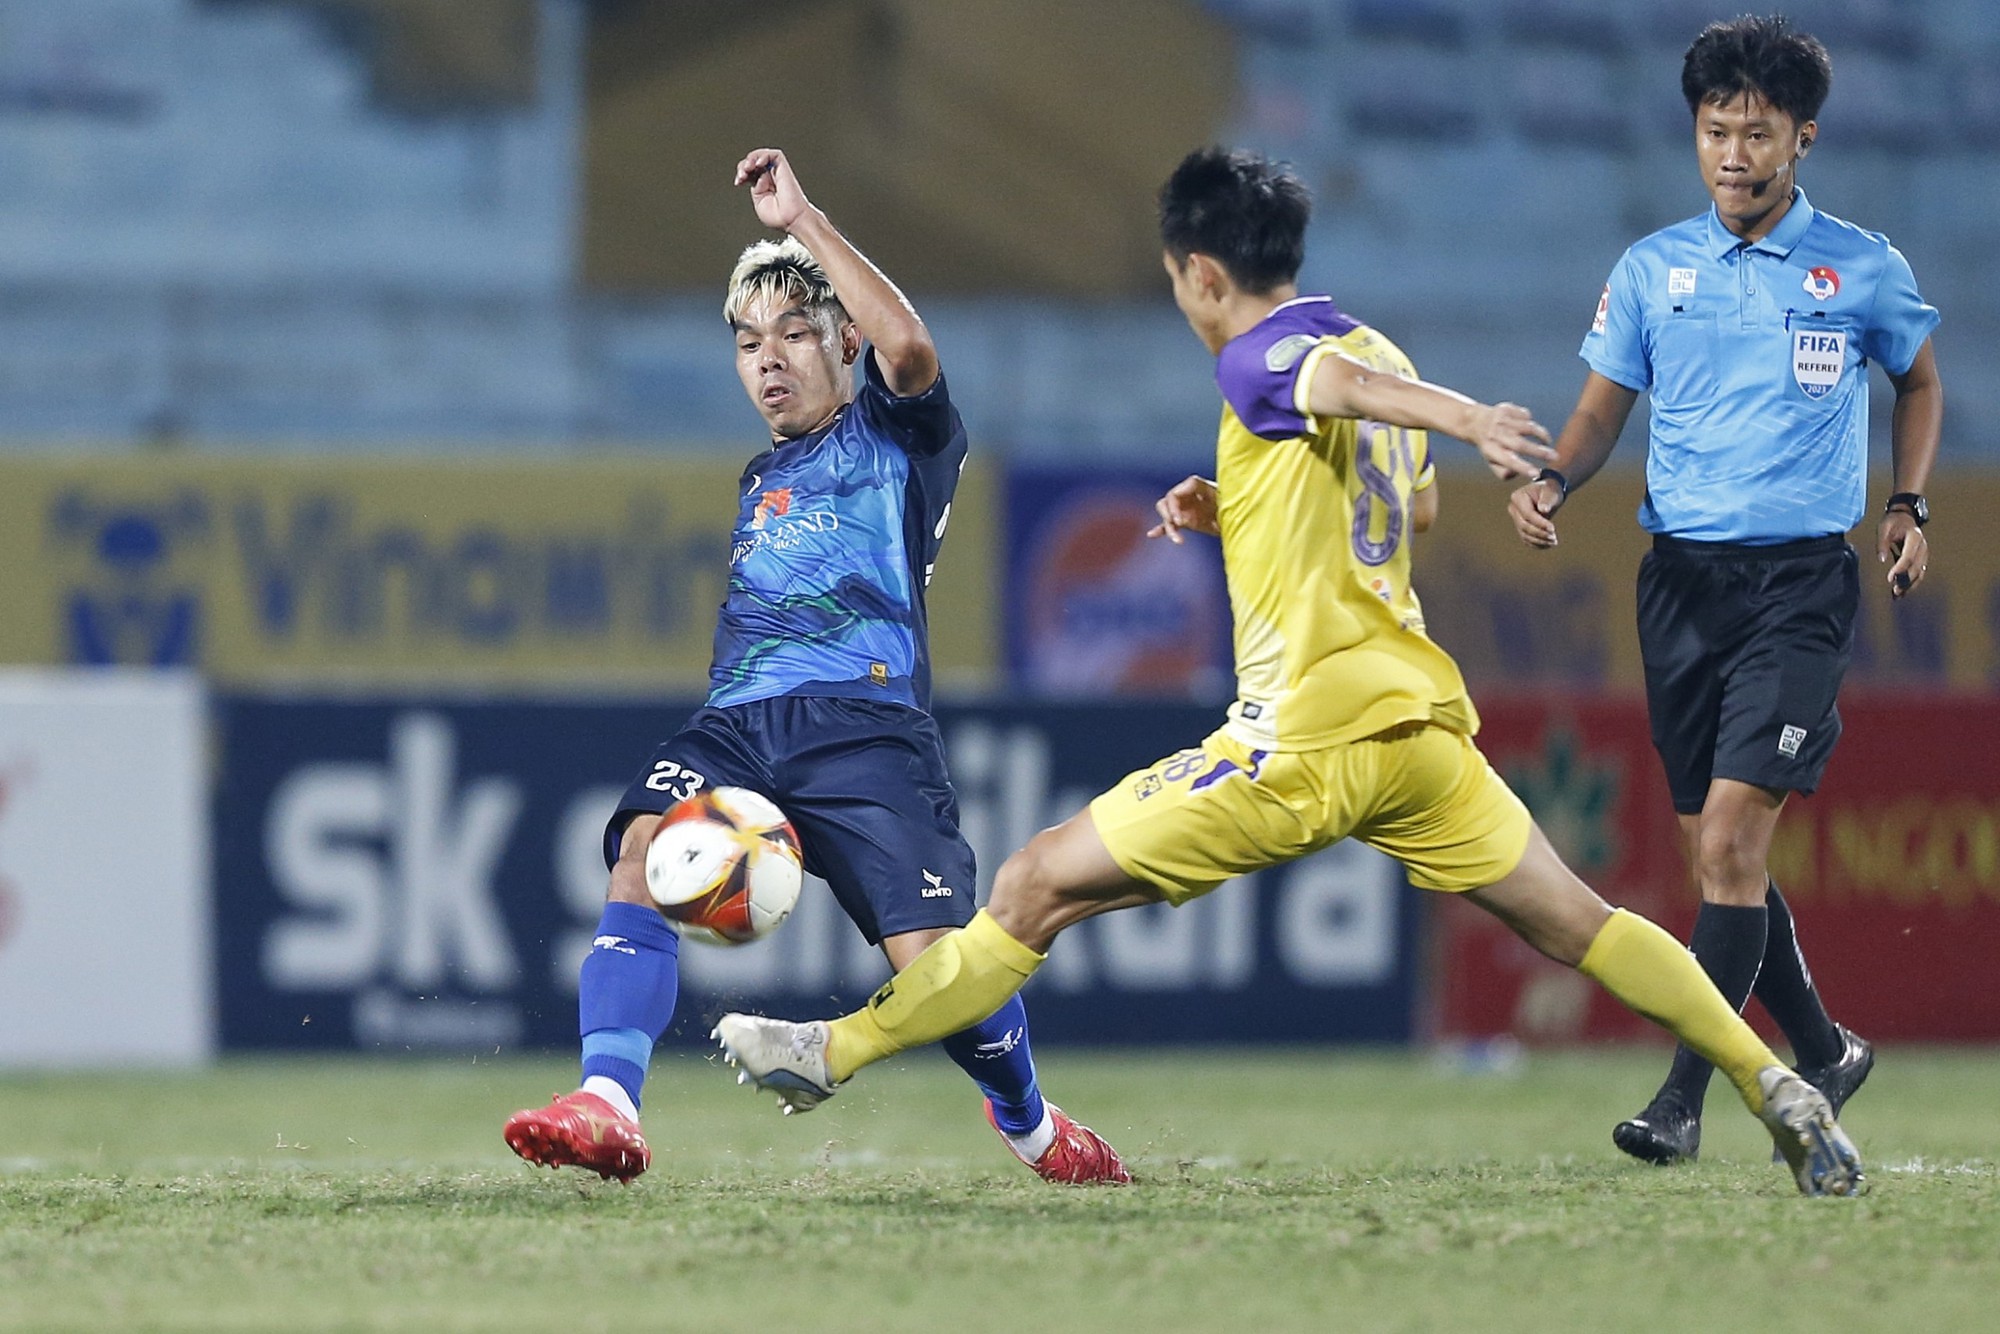 Đội bóng Yokohama FC của Công Phượng xuống hạng; Rashford bị nghi “chống đối” Ten Hag